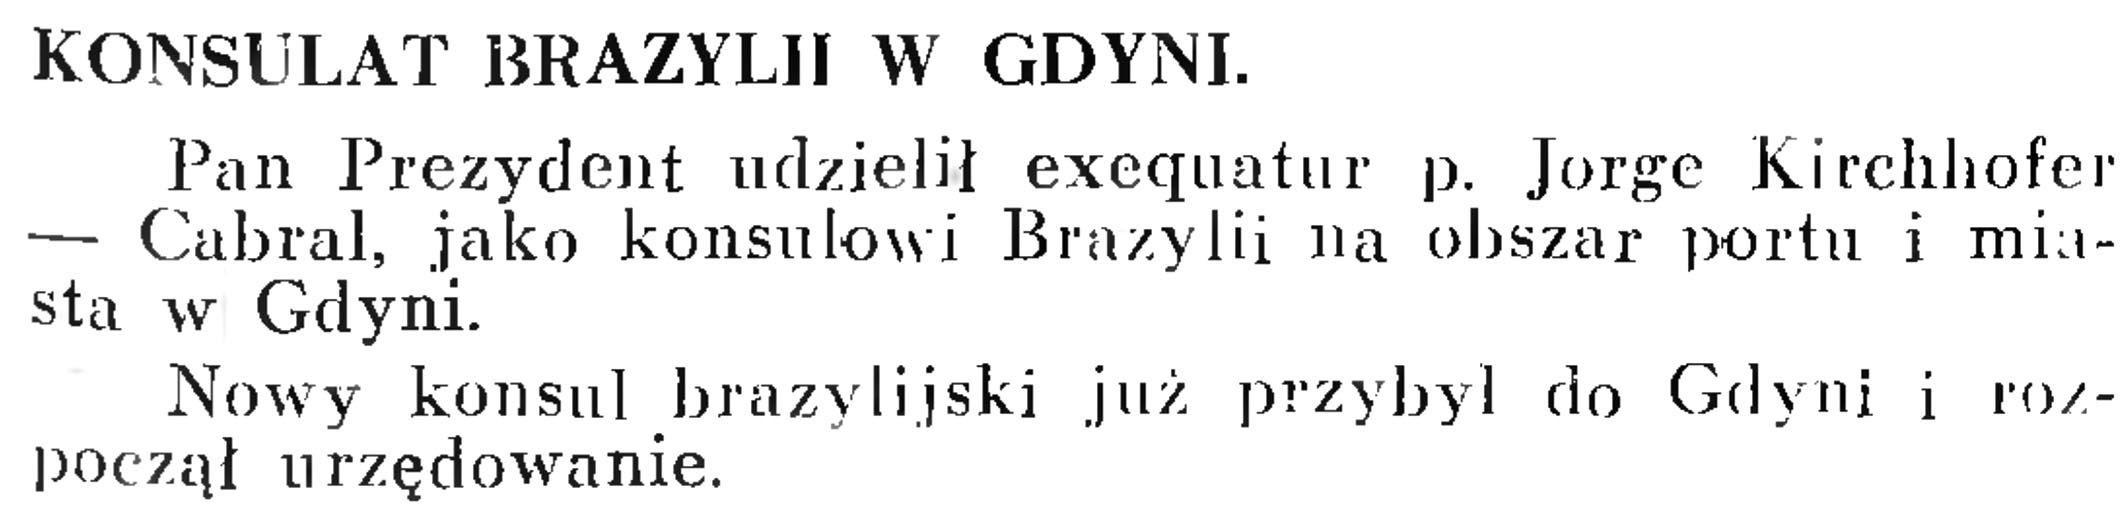 Konsulat Brazylji w Gdyni // Wiadomości Portowe. - 1939, nr 3, s. 17